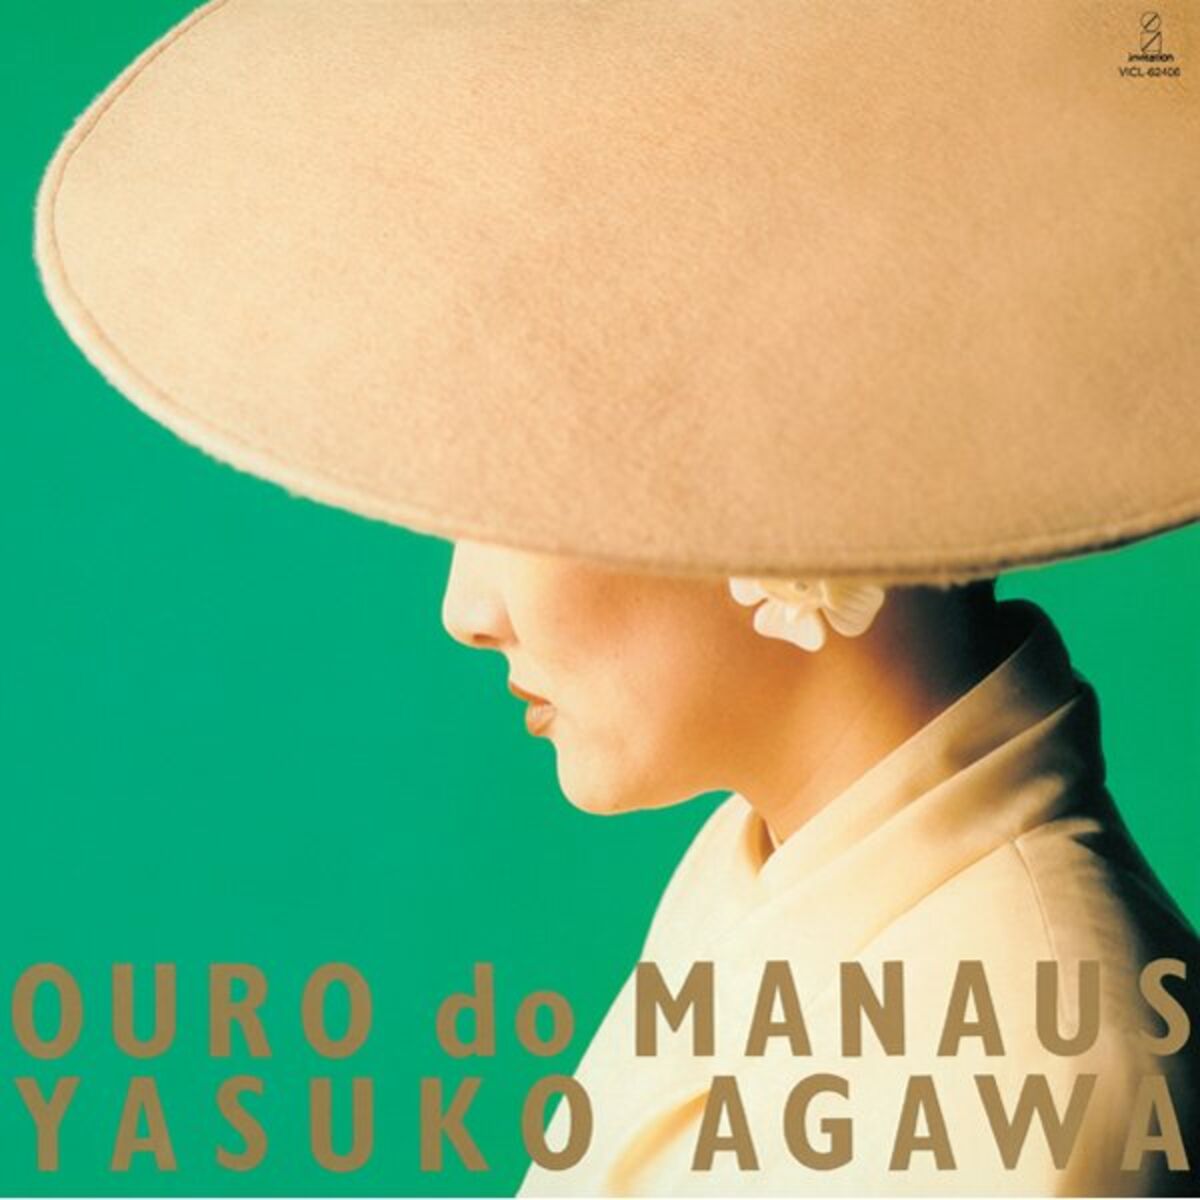 Yasuko Agawa: albums, songs, playlists | Listen on Deezer